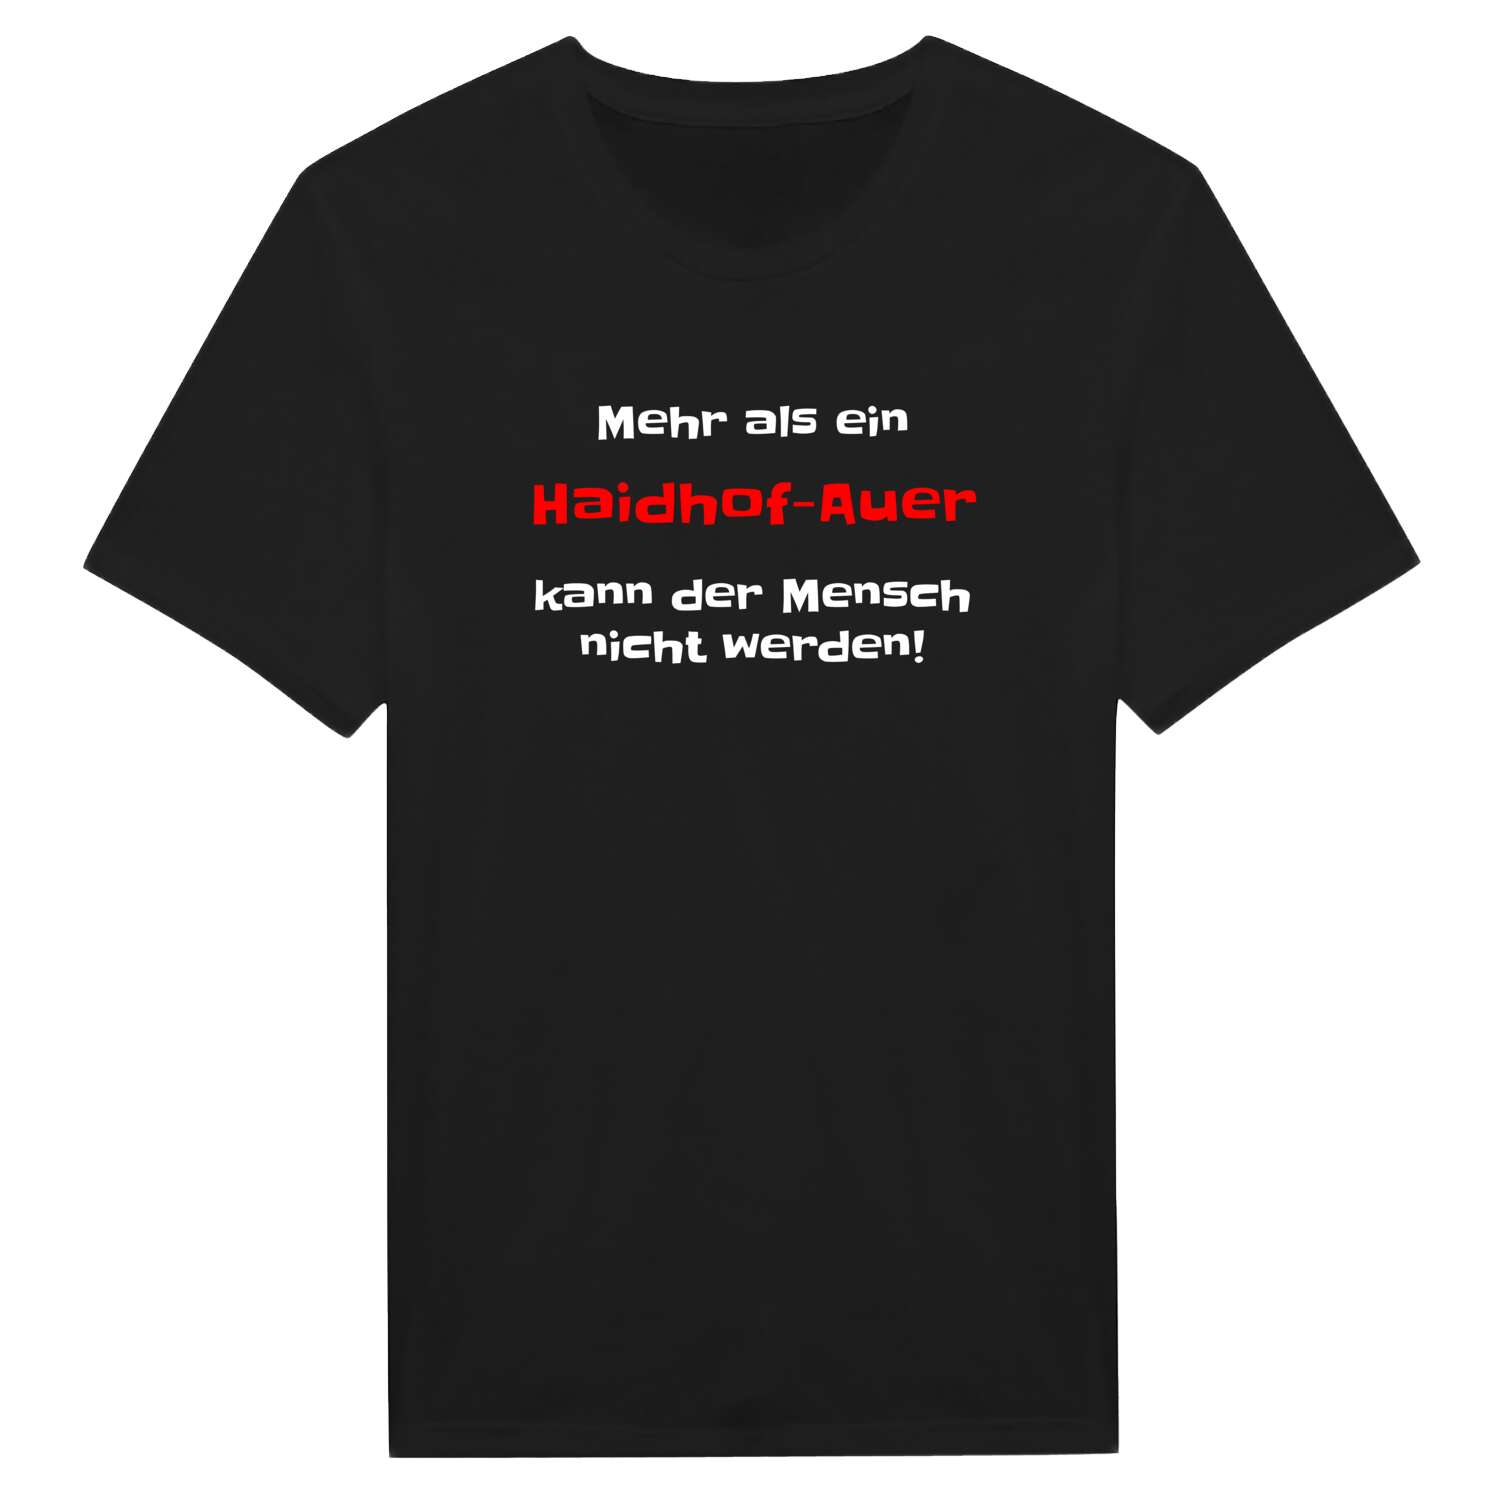 Haidhof-Au T-Shirt »Mehr als ein«